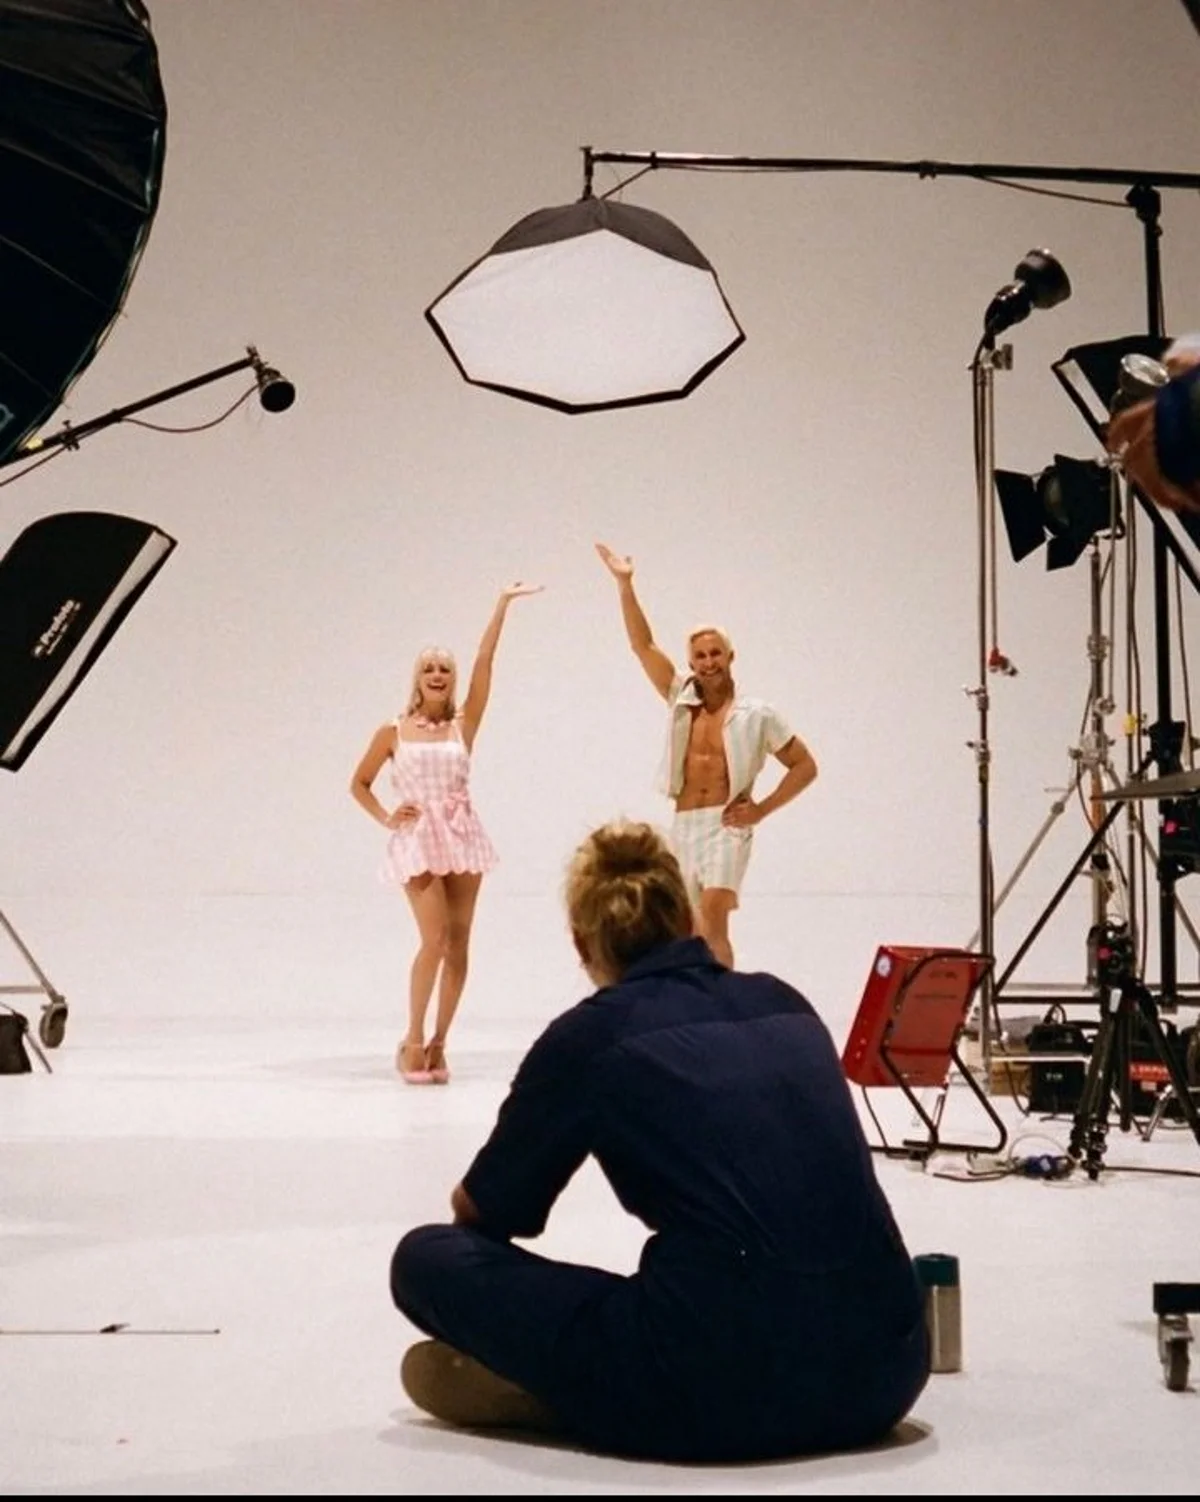 Обаятельные Марго Робби и Райан Гослинг появились на новом фото со съёмок «Барби» - фото 1